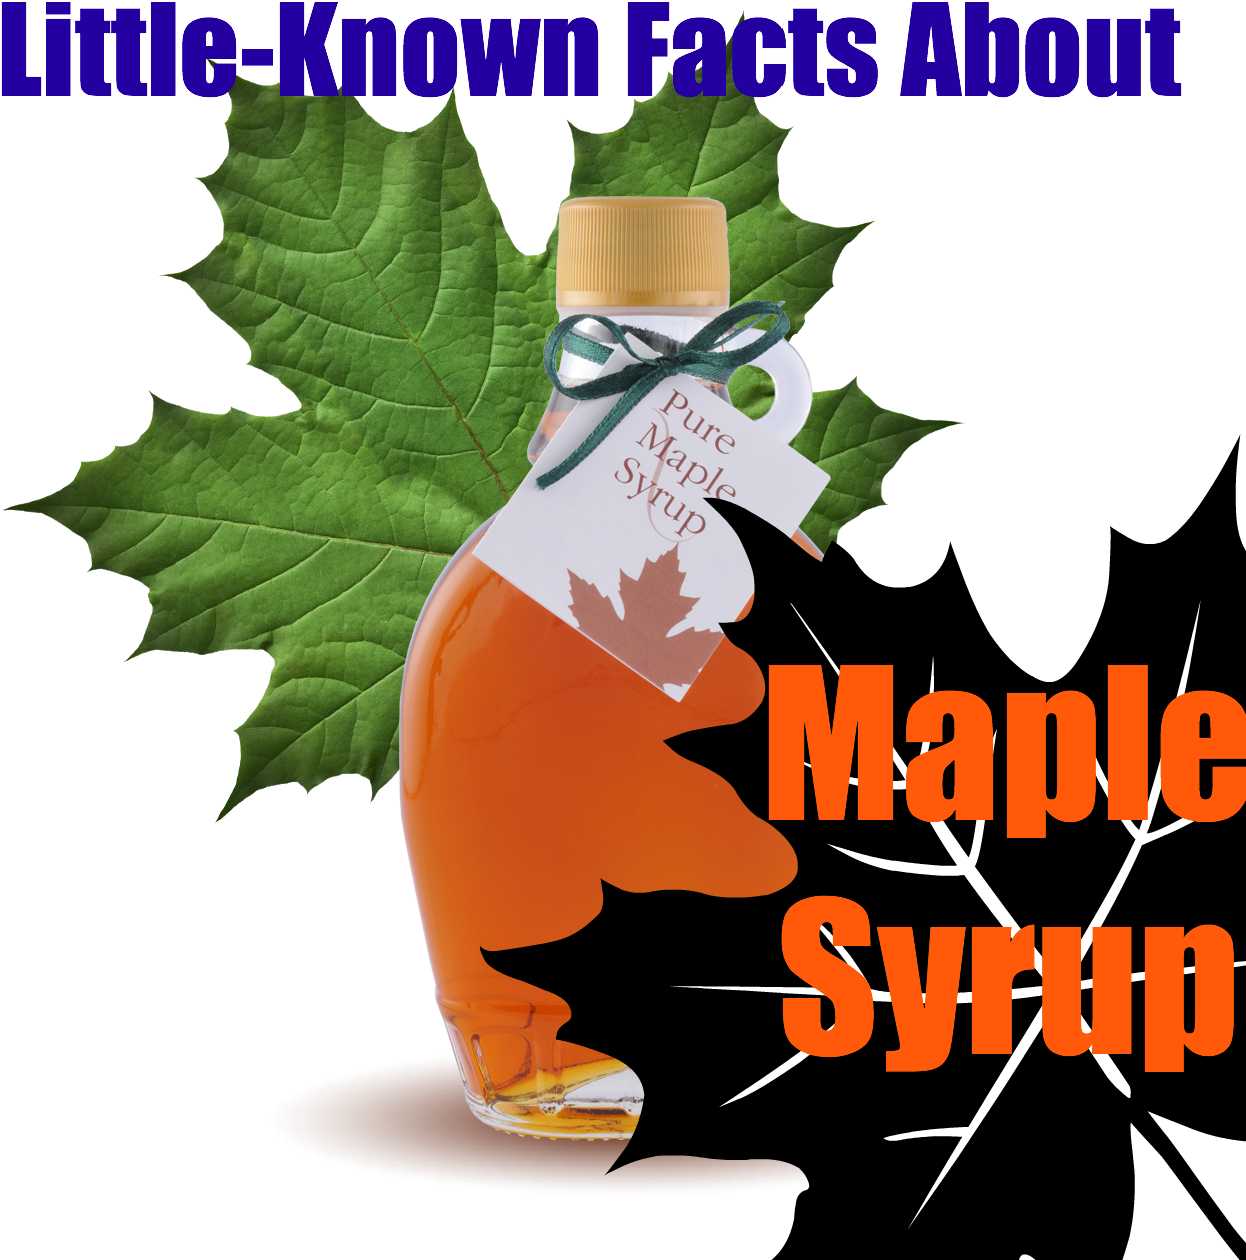 Facts About Maple Syrup - Facts About Maple Syrup (1280x1280)